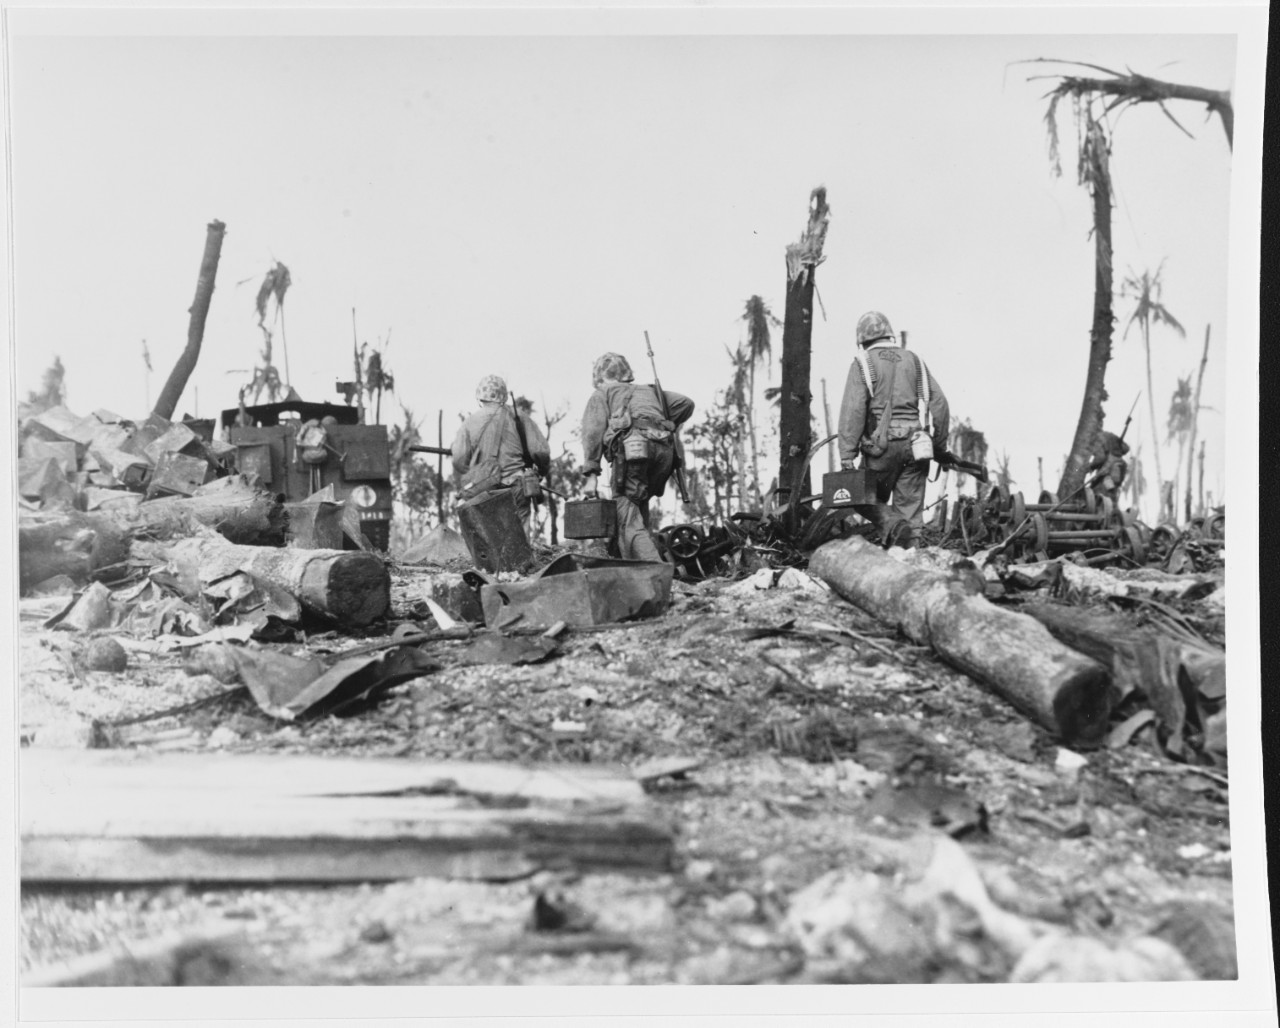 Kwajalein Operation, January- February 1944